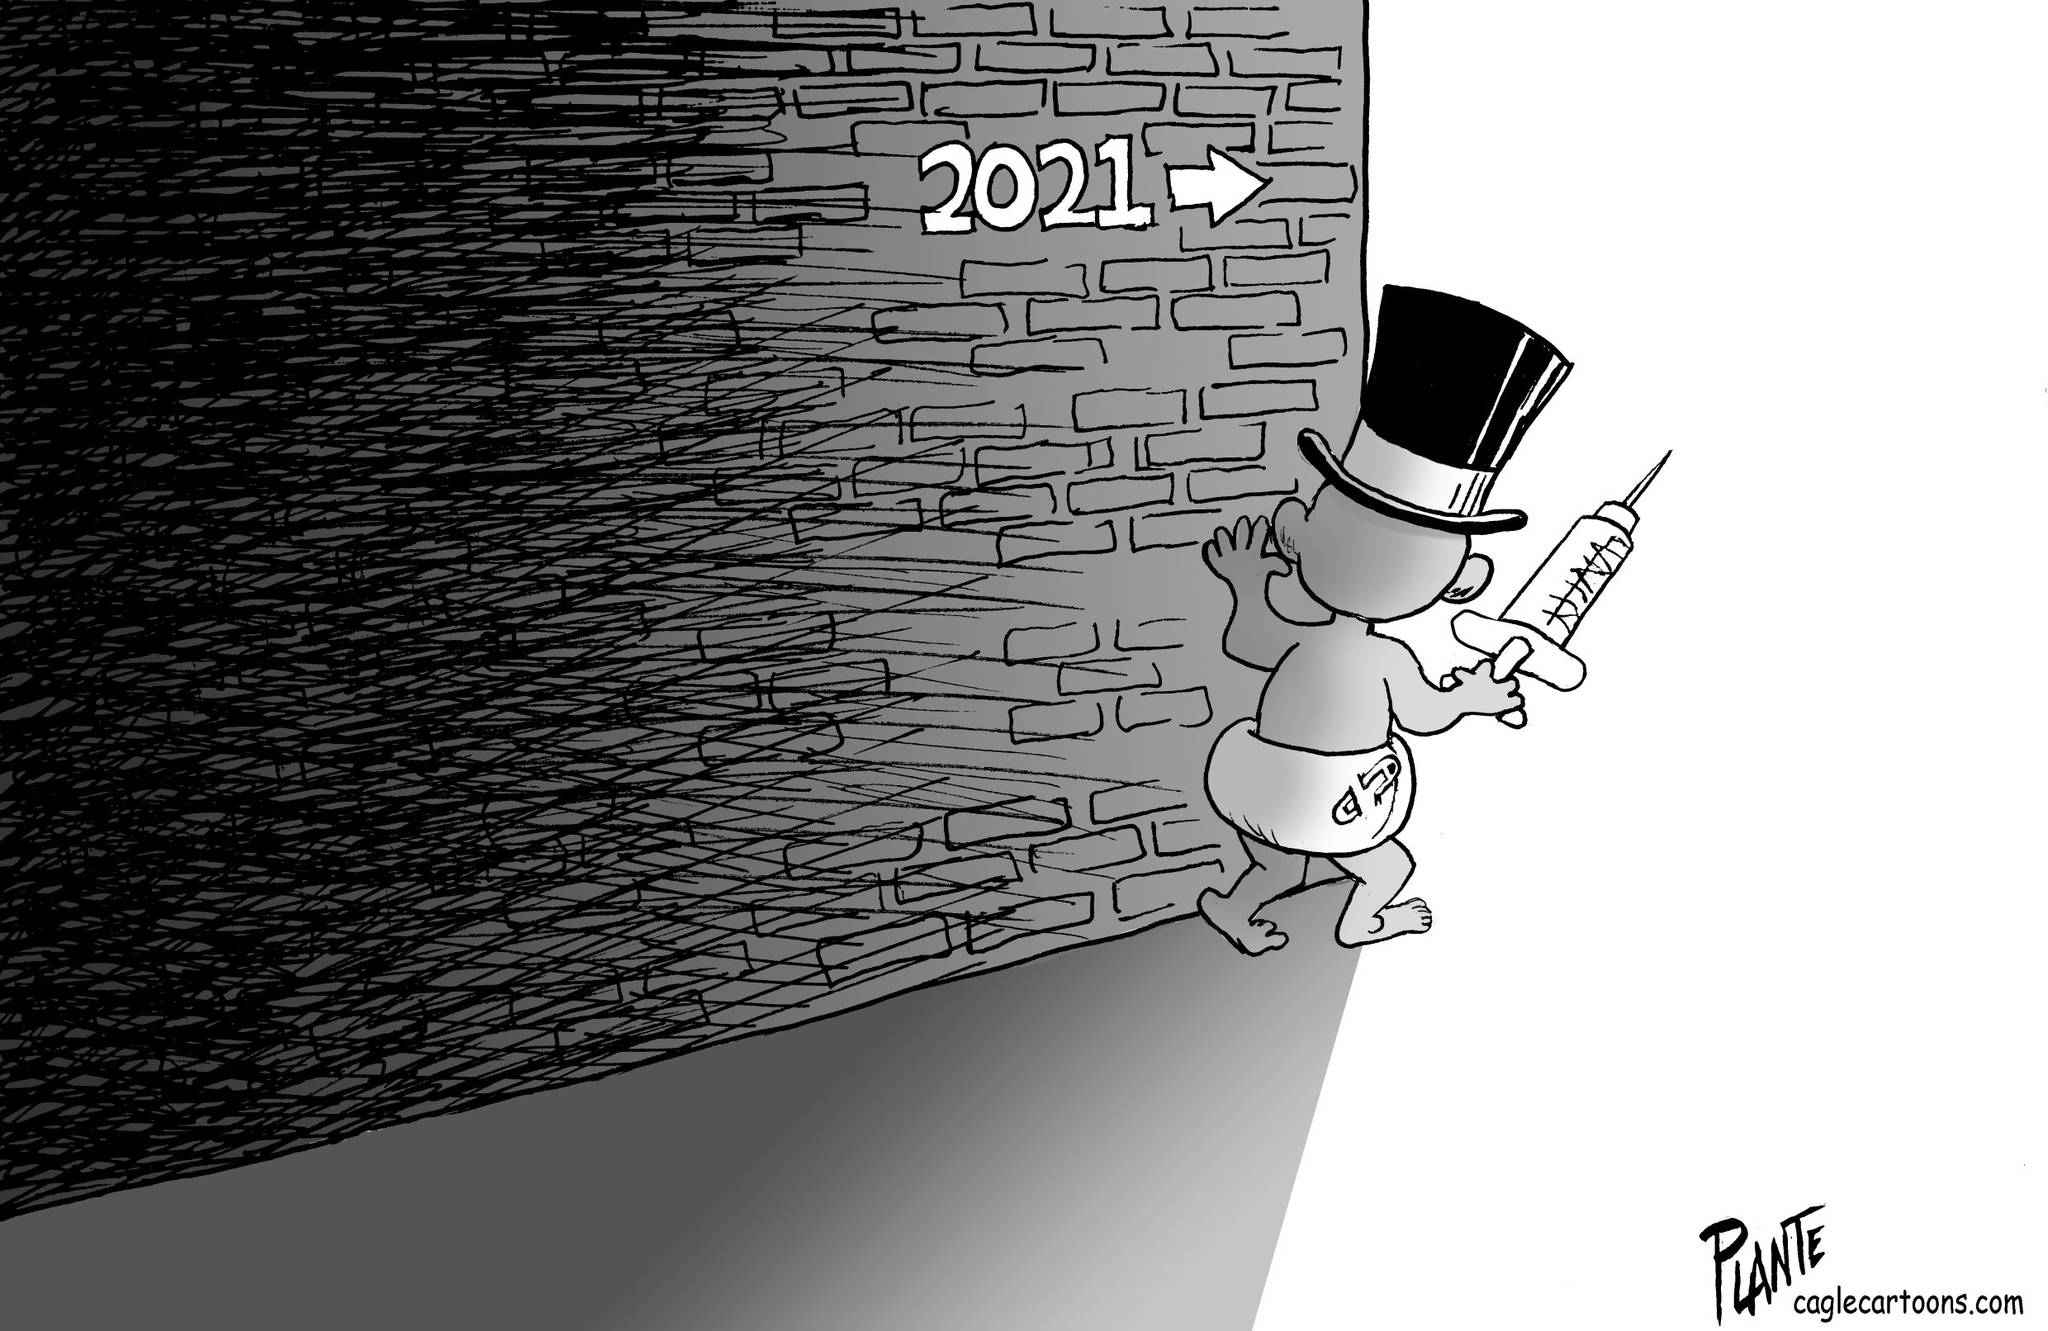 Bruce Plante, PoliticalCartoons.com